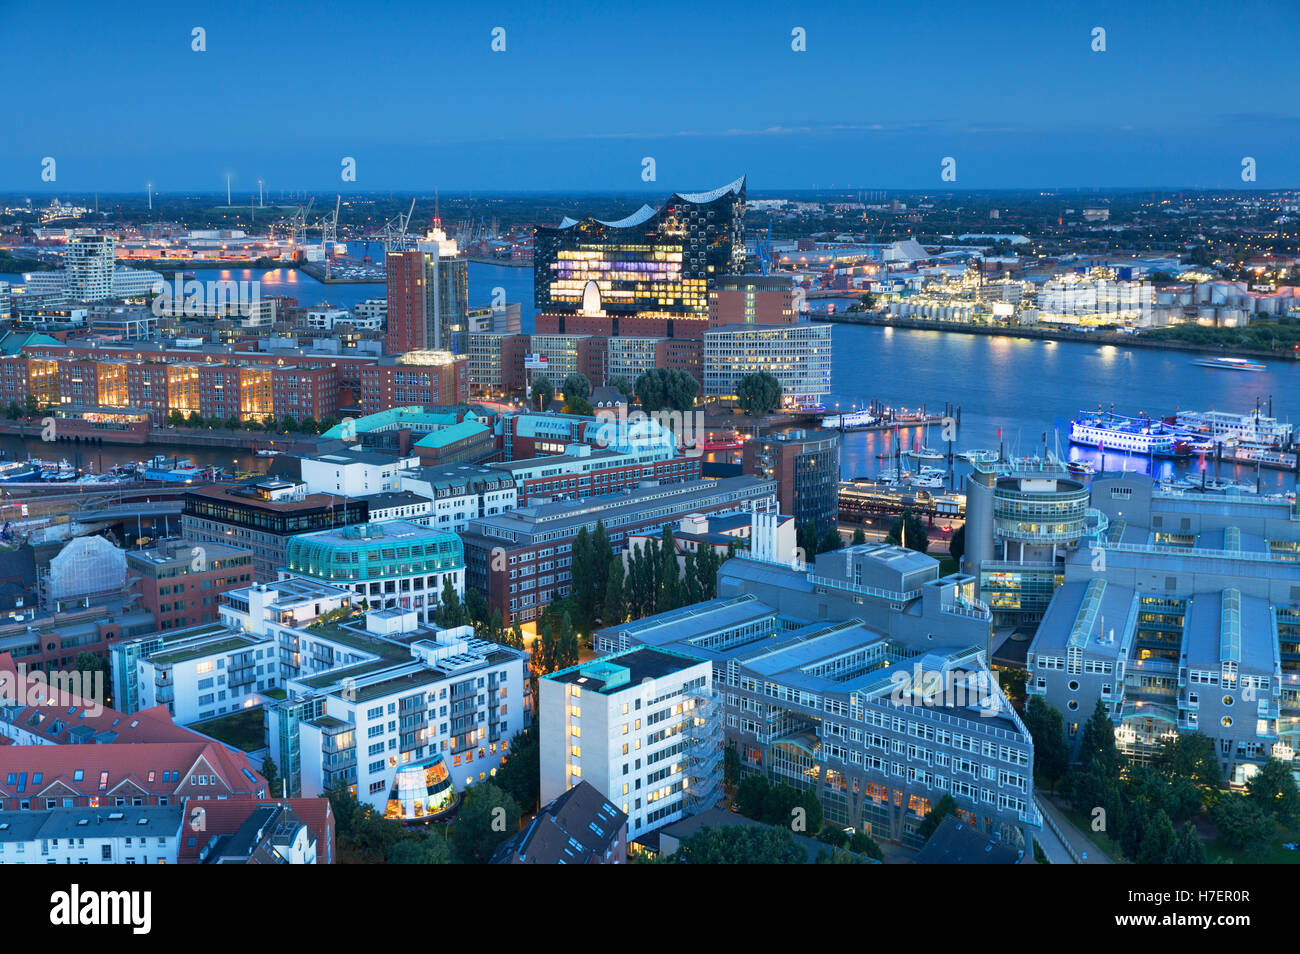 Vista della Elbphilharmonie concert hall e il porto al tramonto, Amburgo, Germania Foto Stock